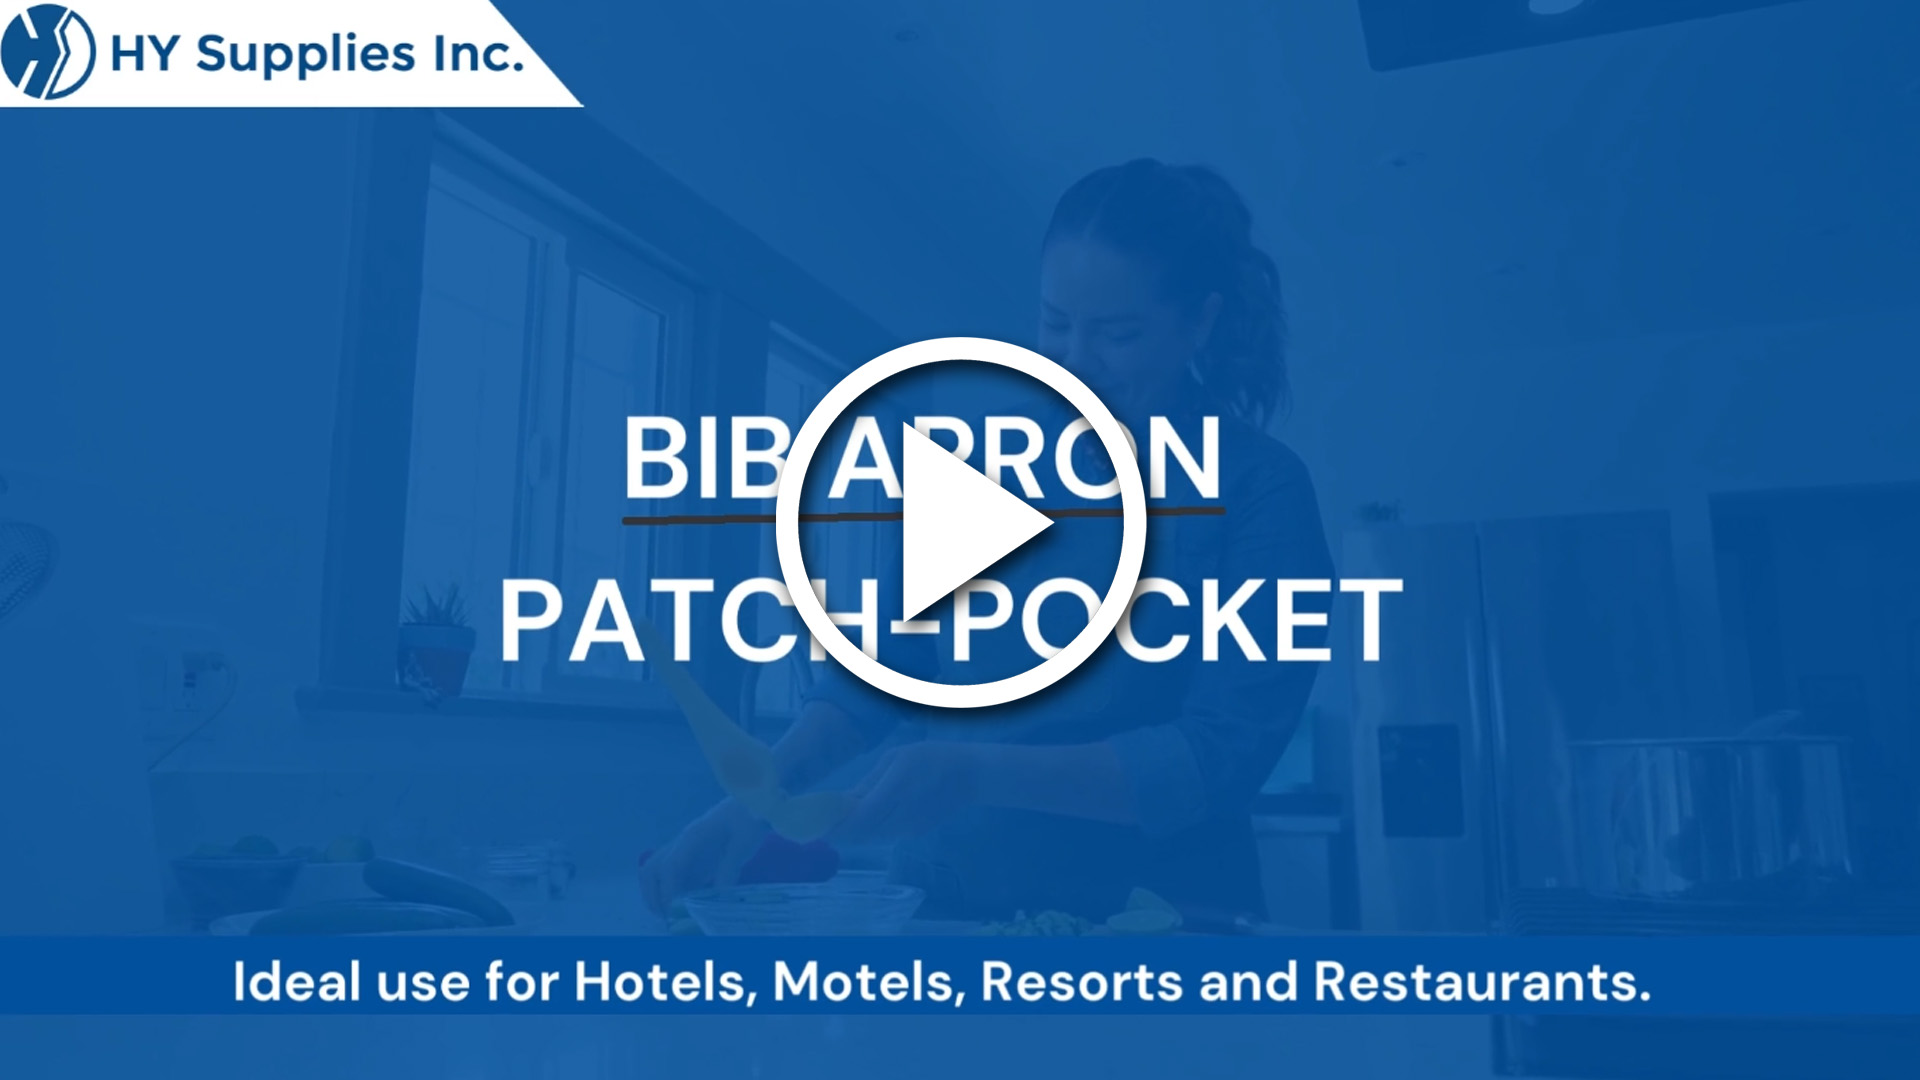 Bib Apron - Patch-Pocket